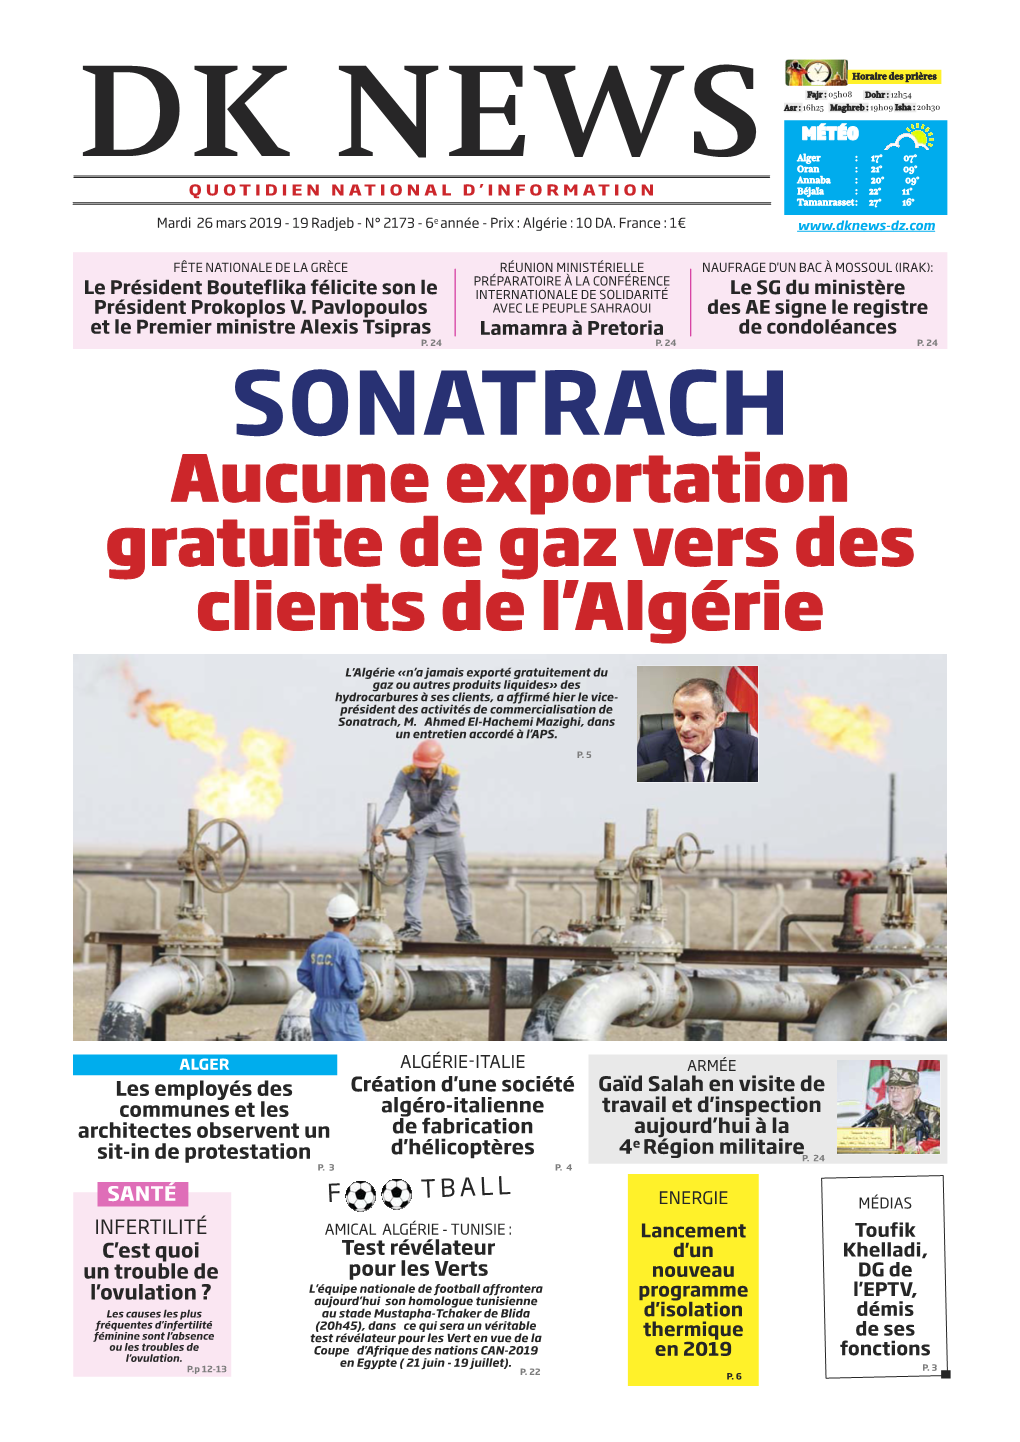 SONATRACH Aucune Exportation Gratuite De Gaz Vers Des Clients De L'algérie